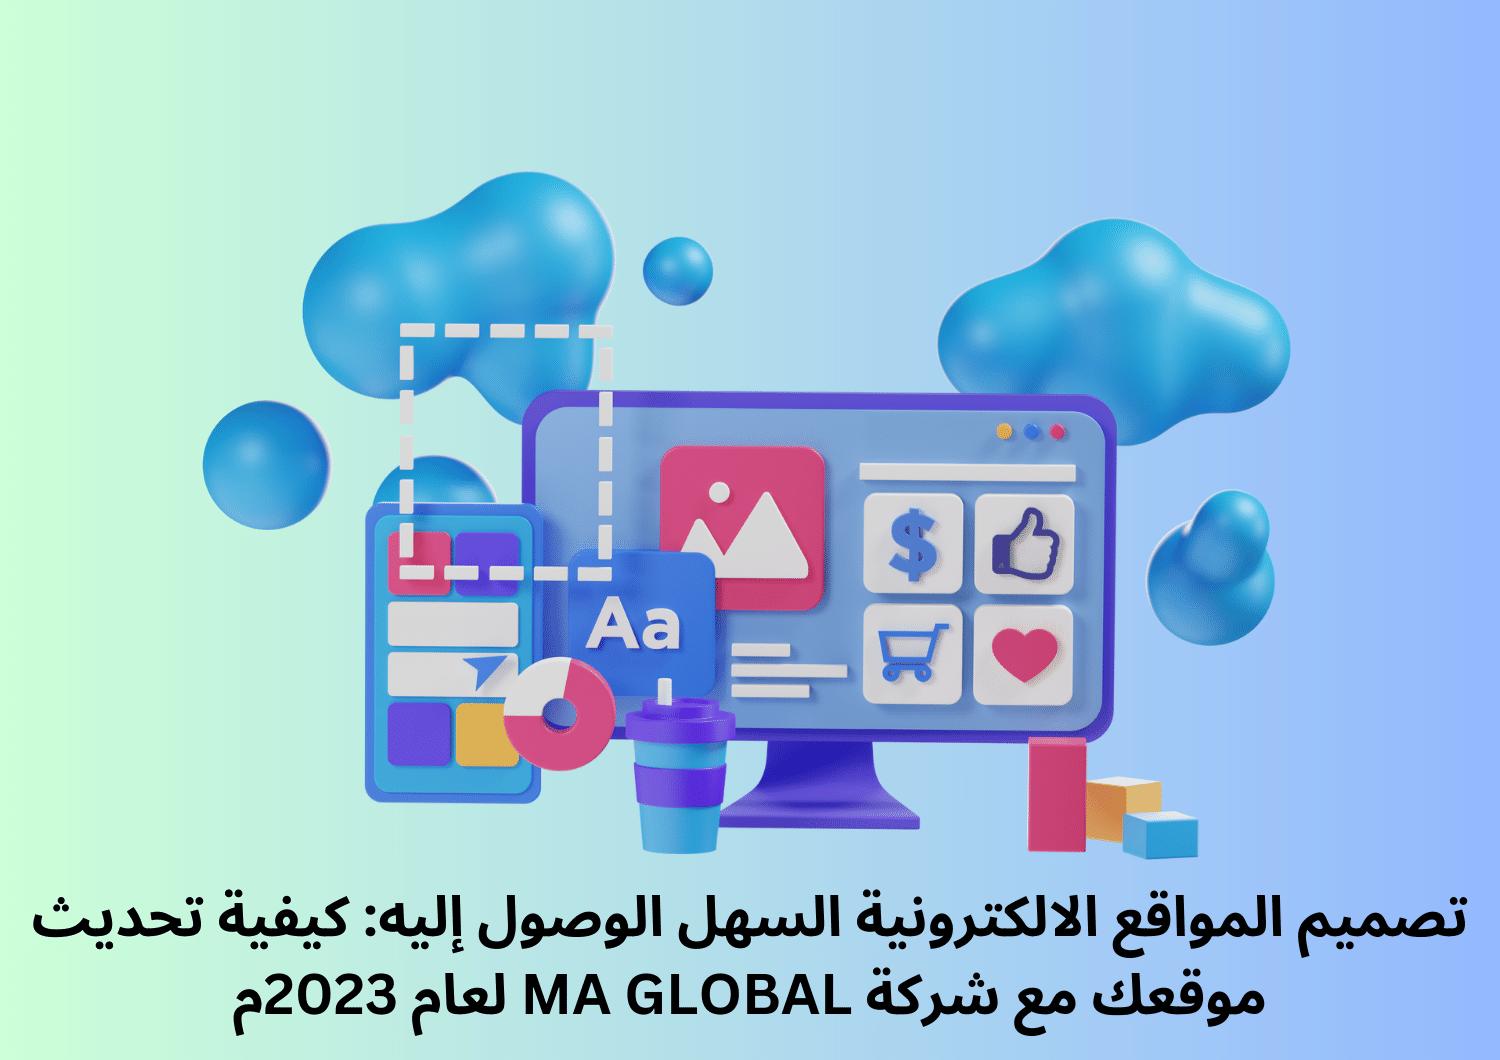 تصميم المواقع الالكترونية السهل الوصول إليه: كيفية تحديث موقعك مع شركة MA GLOBAL لعام 2023م